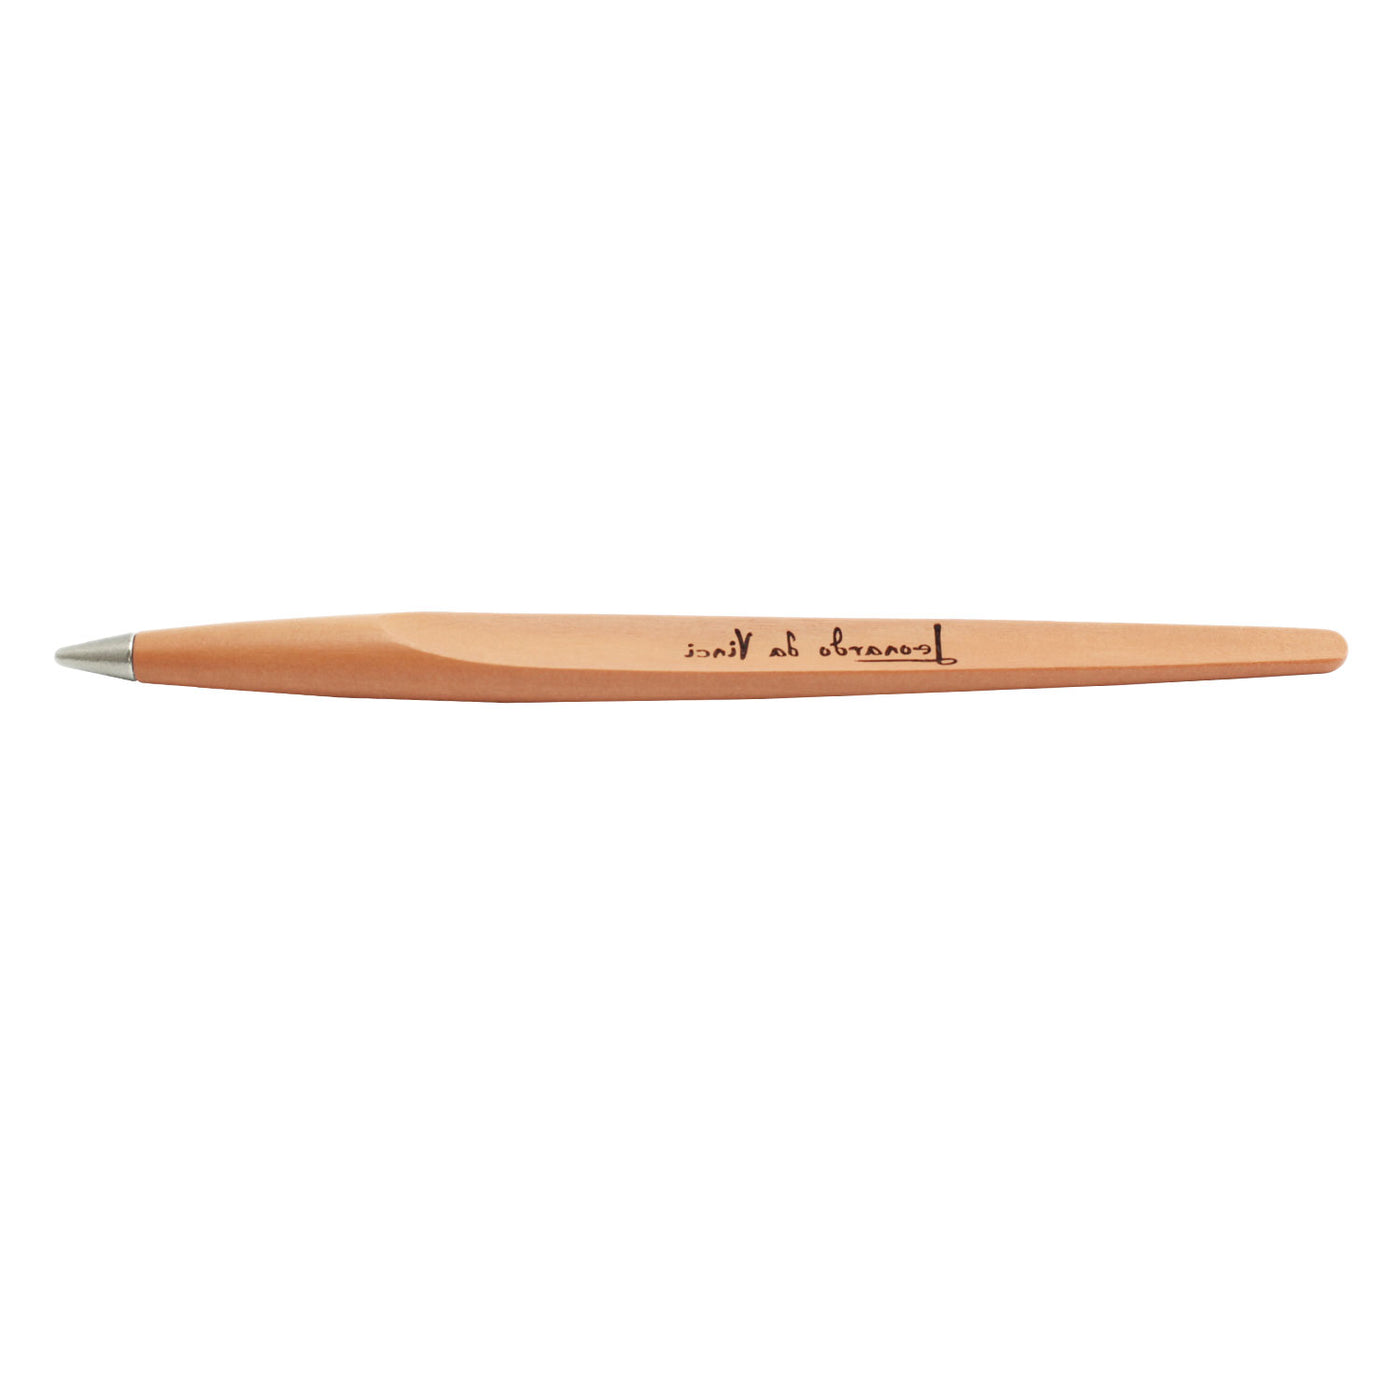 Pininfarina Segno Forever Piuma Leonardo 500th Limited Ethergraf Pencil - Evaporated Pear Wood 8